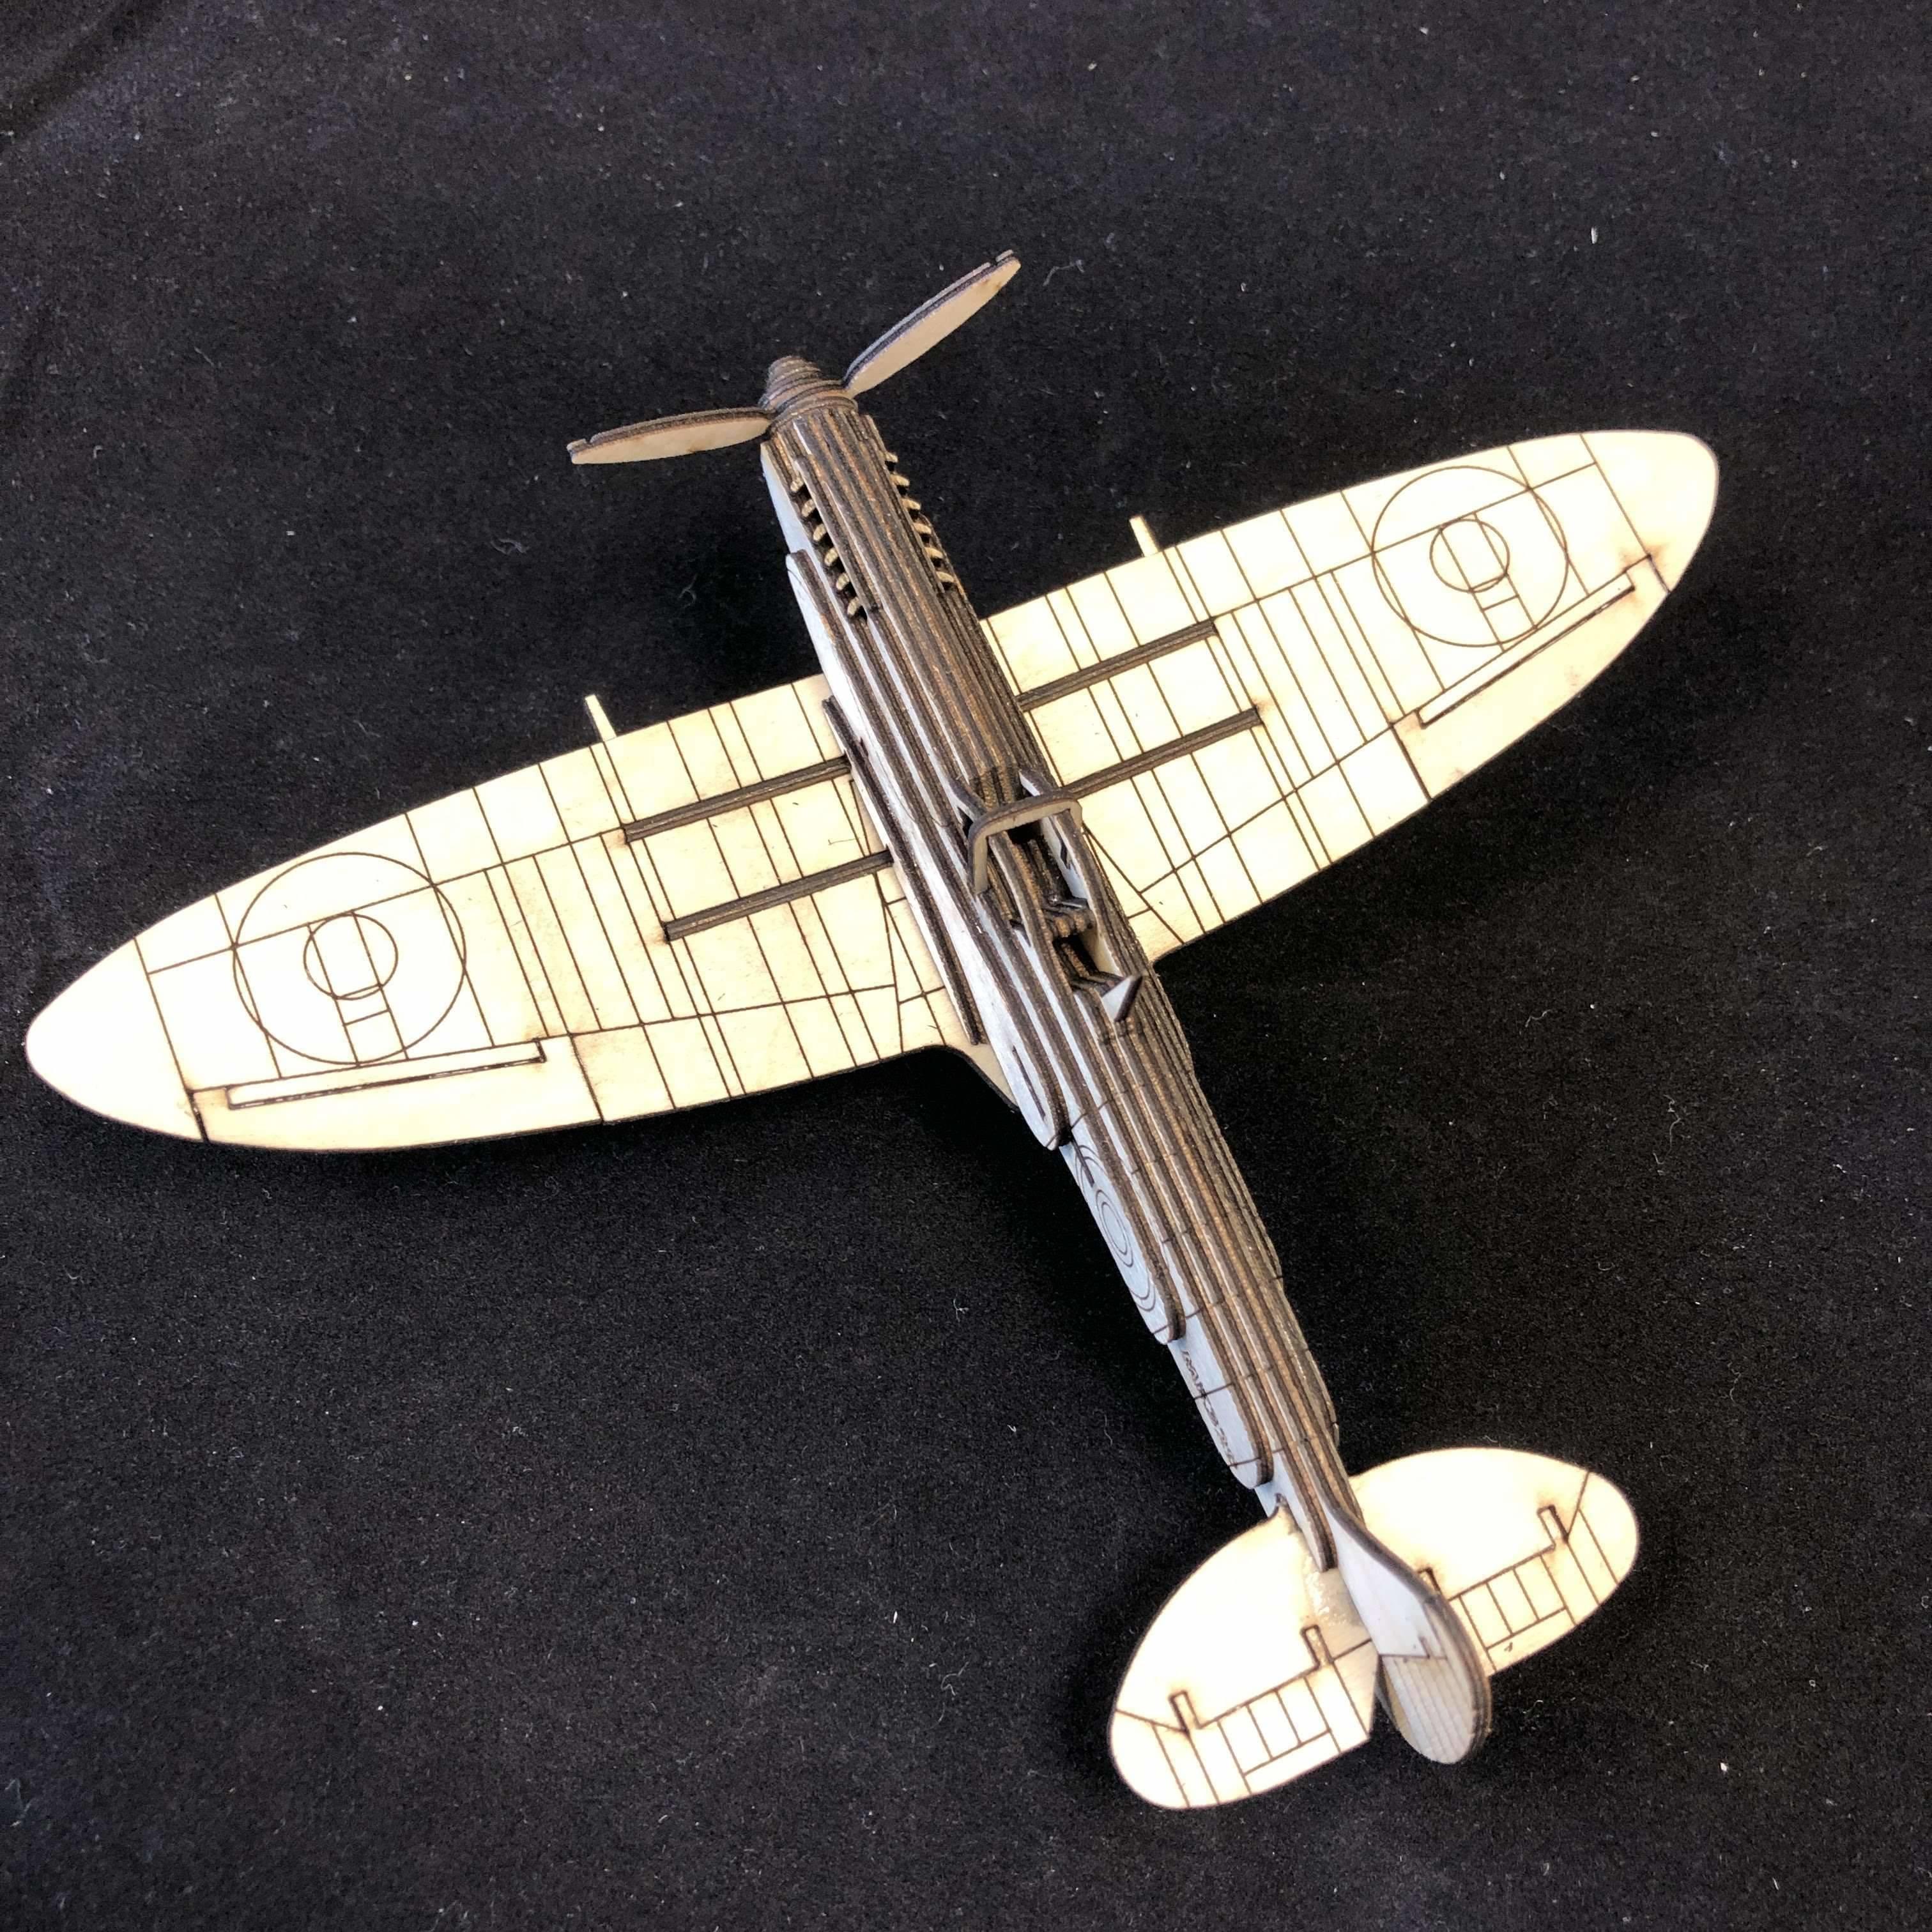 Red Berry Crafts Ltd:Supermarine Spitfire 3D Model Kit